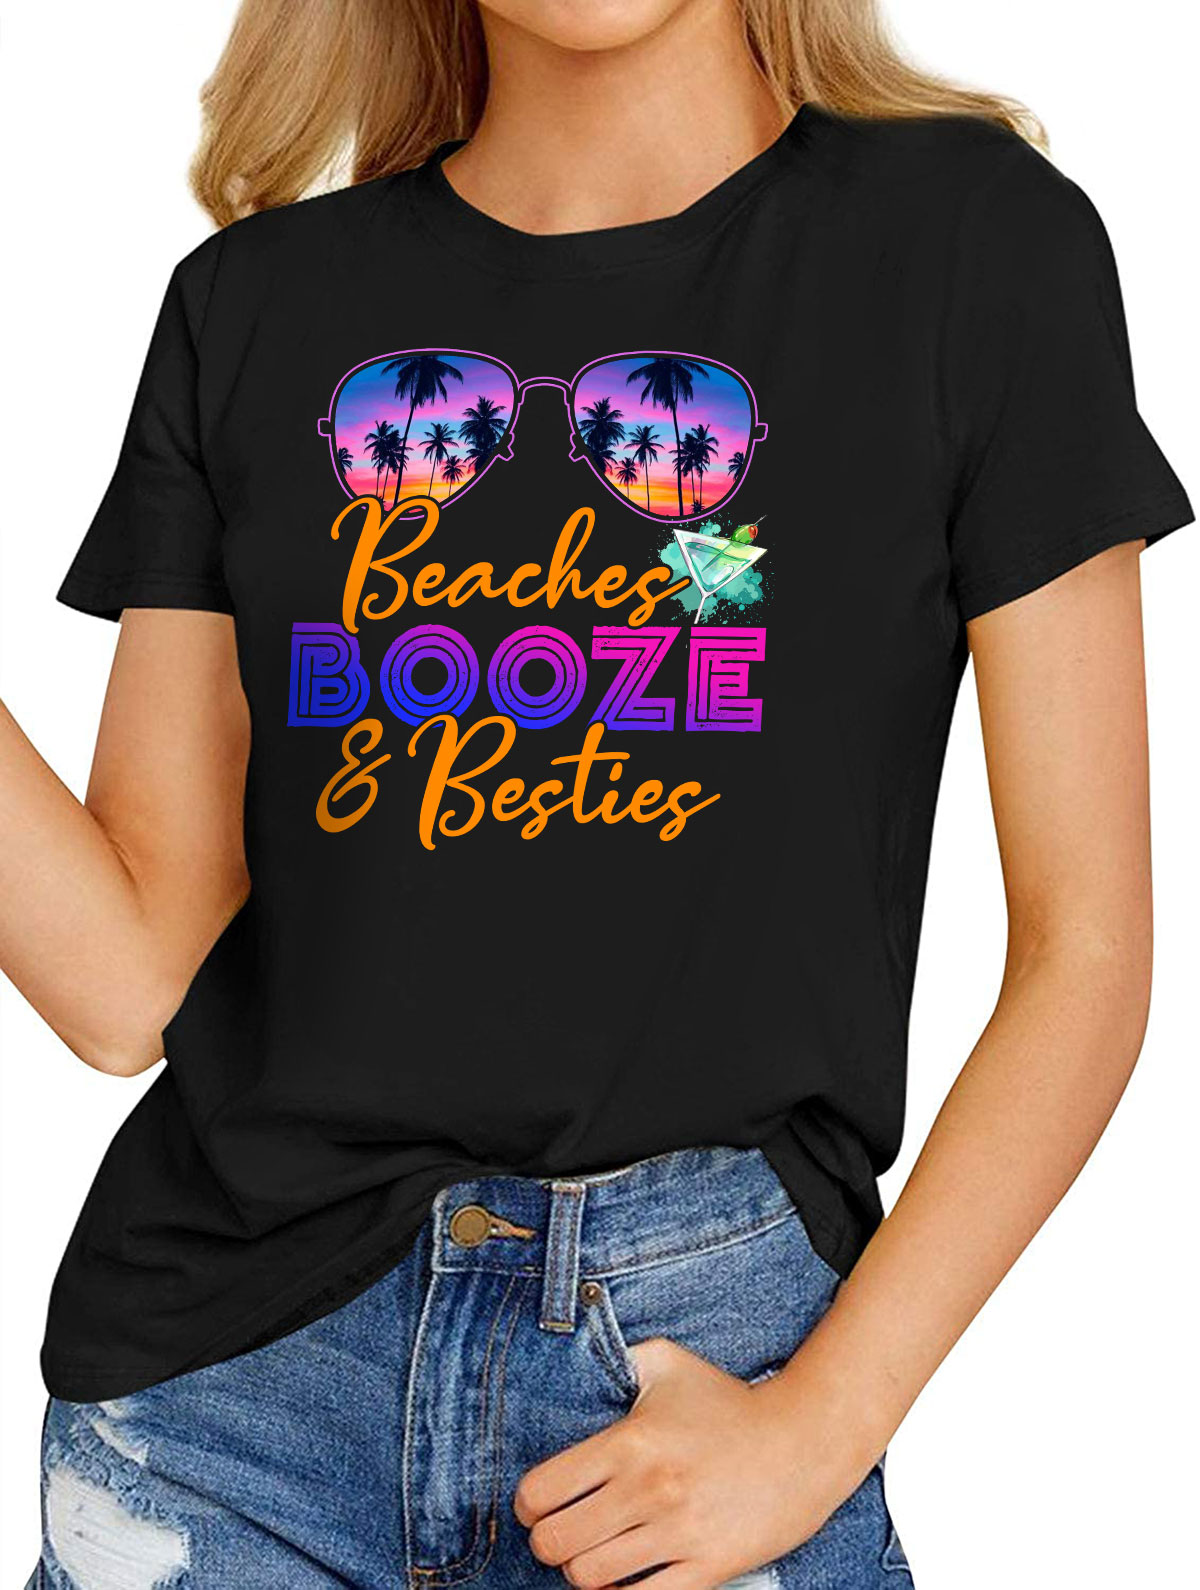 Besties Gift Shirt – Crew Neck 